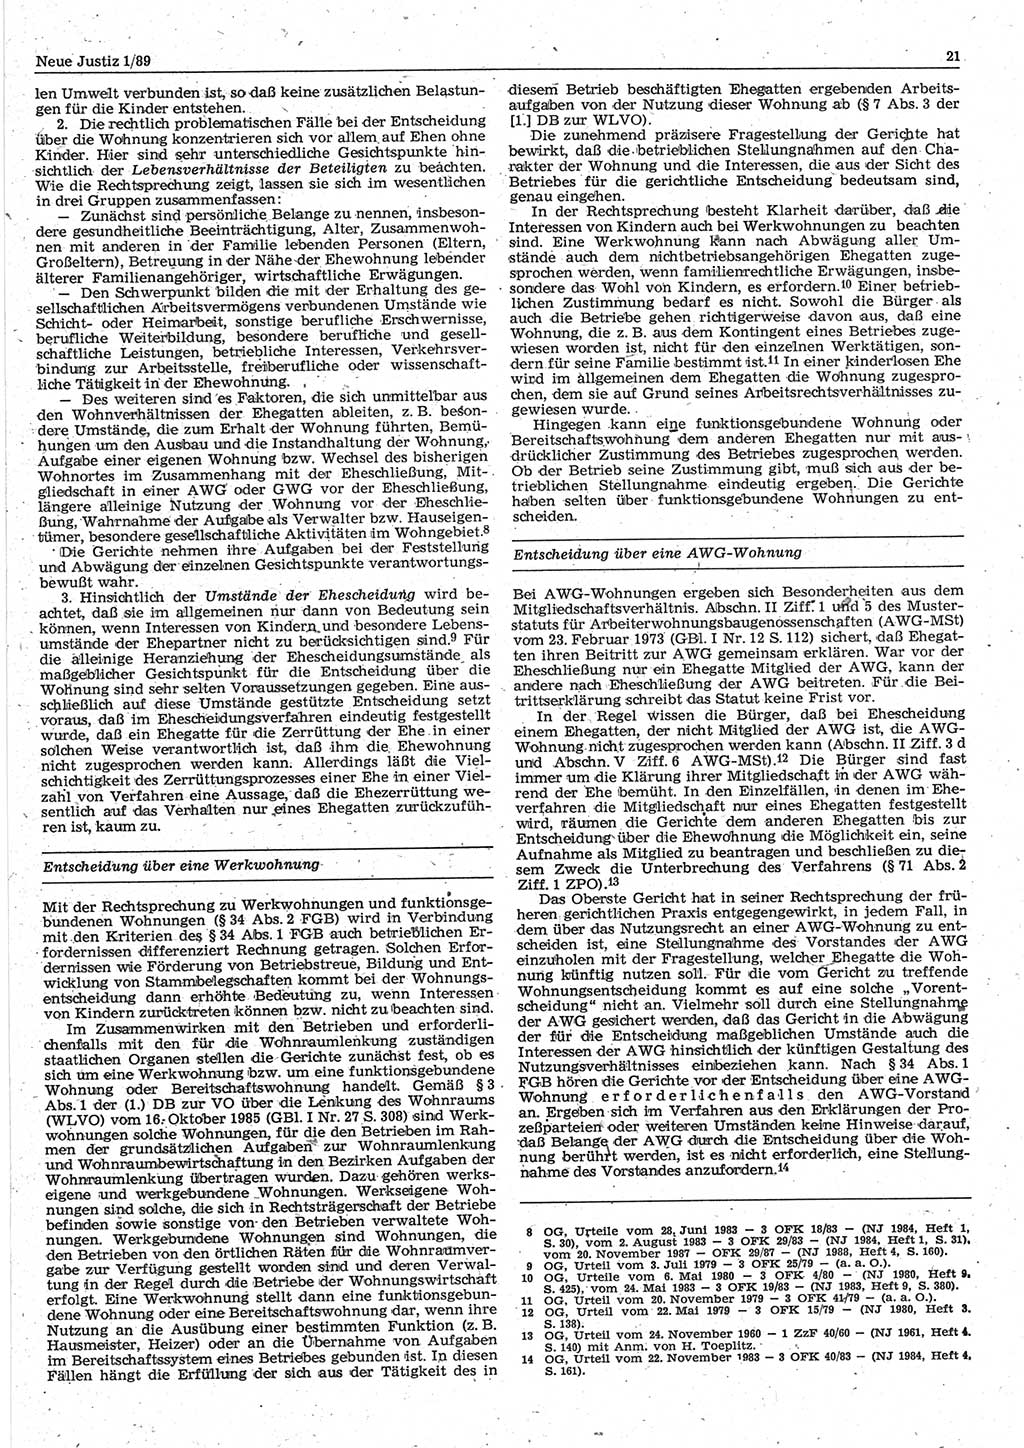 Neue Justiz (NJ), Zeitschrift für sozialistisches Recht und Gesetzlichkeit [Deutsche Demokratische Republik (DDR)], 43. Jahrgang 1989, Seite 21 (NJ DDR 1989, S. 21)